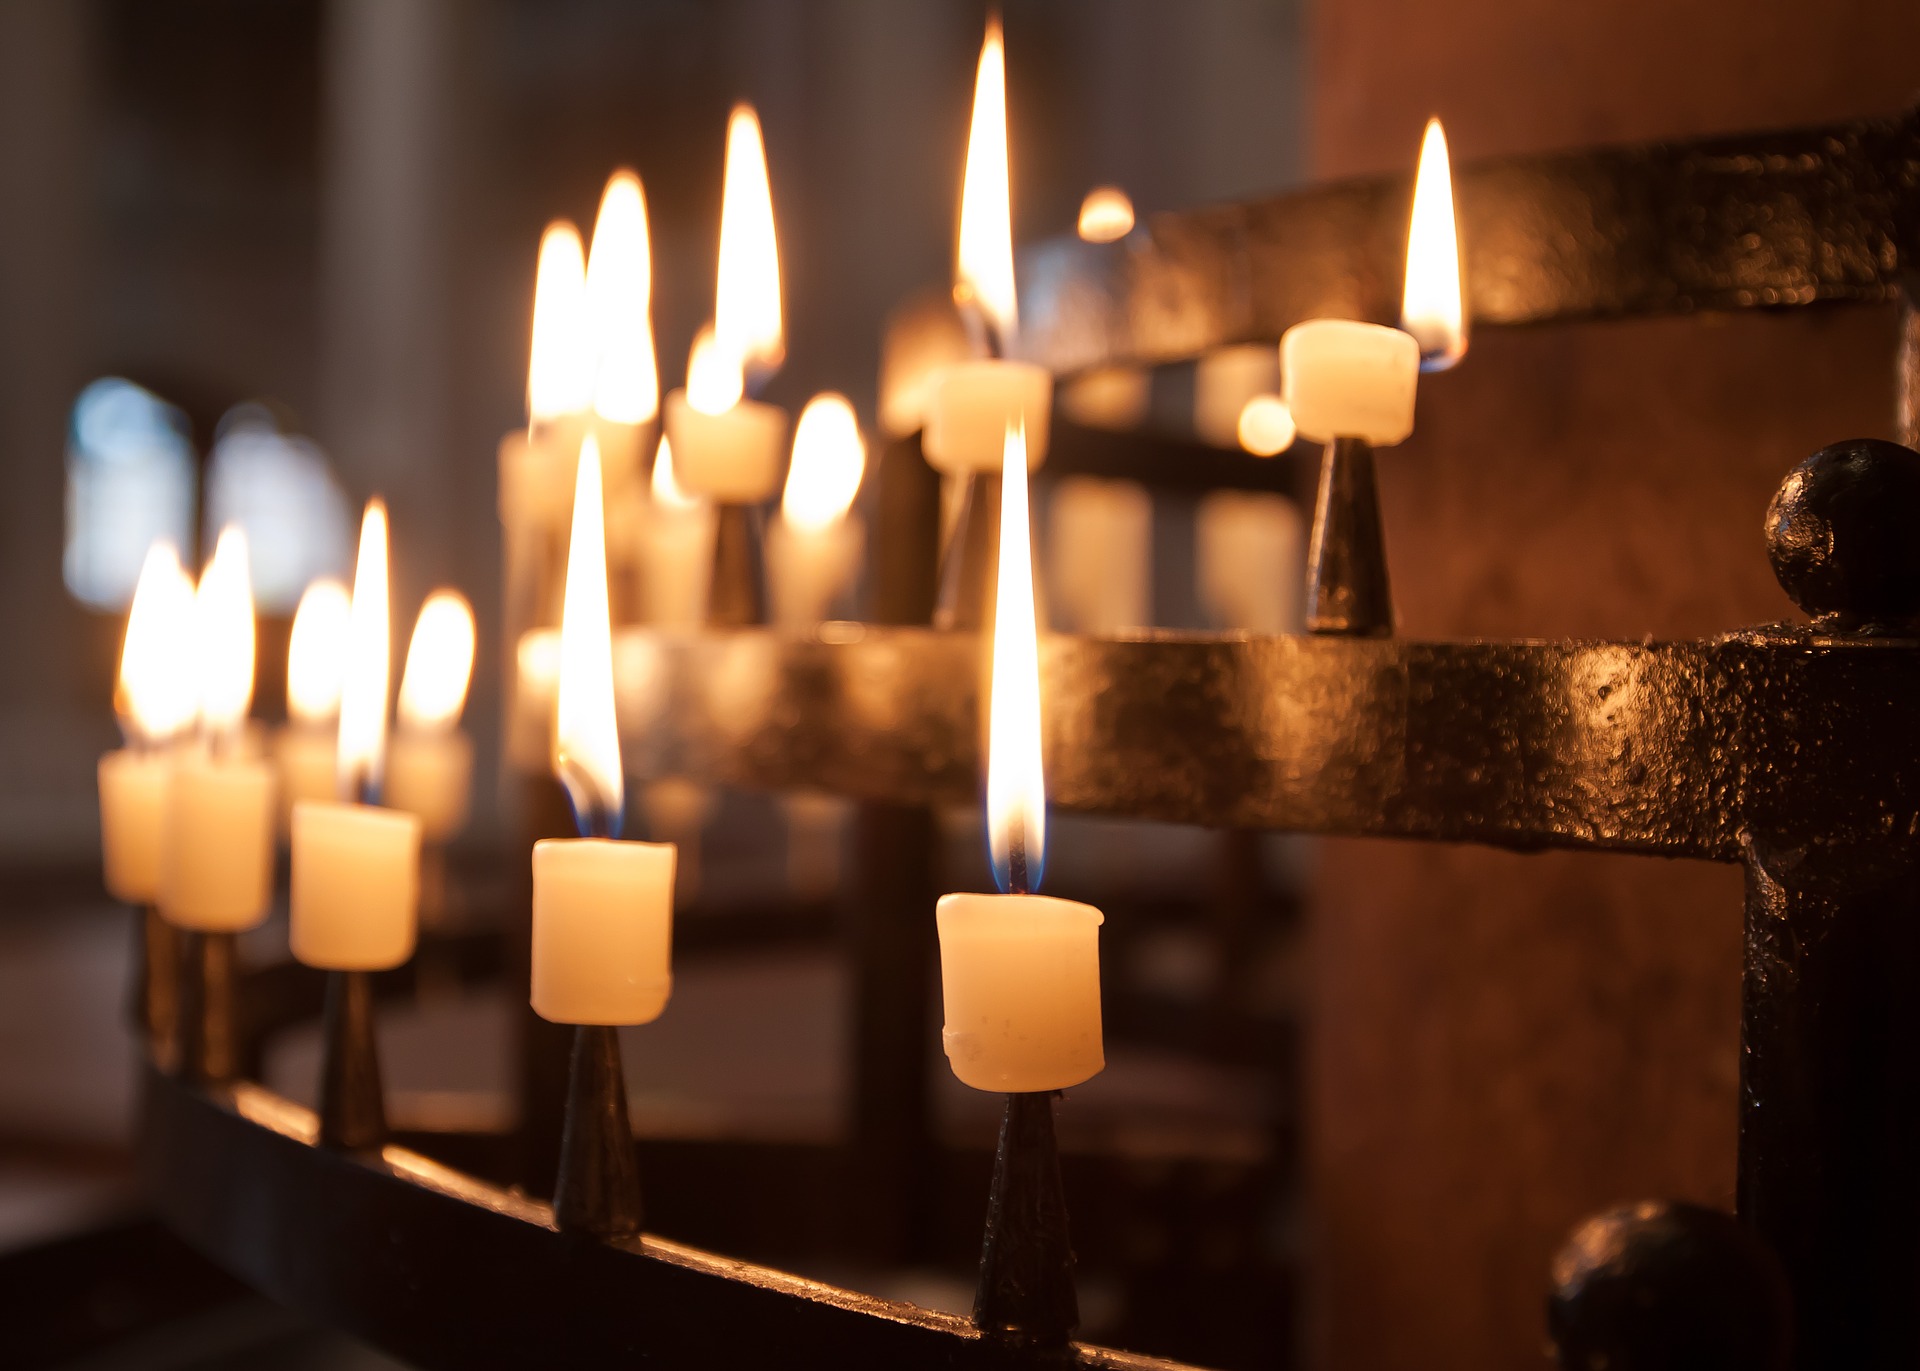 Palavia kynttilöitä kirkon rukouskynttelikössä.